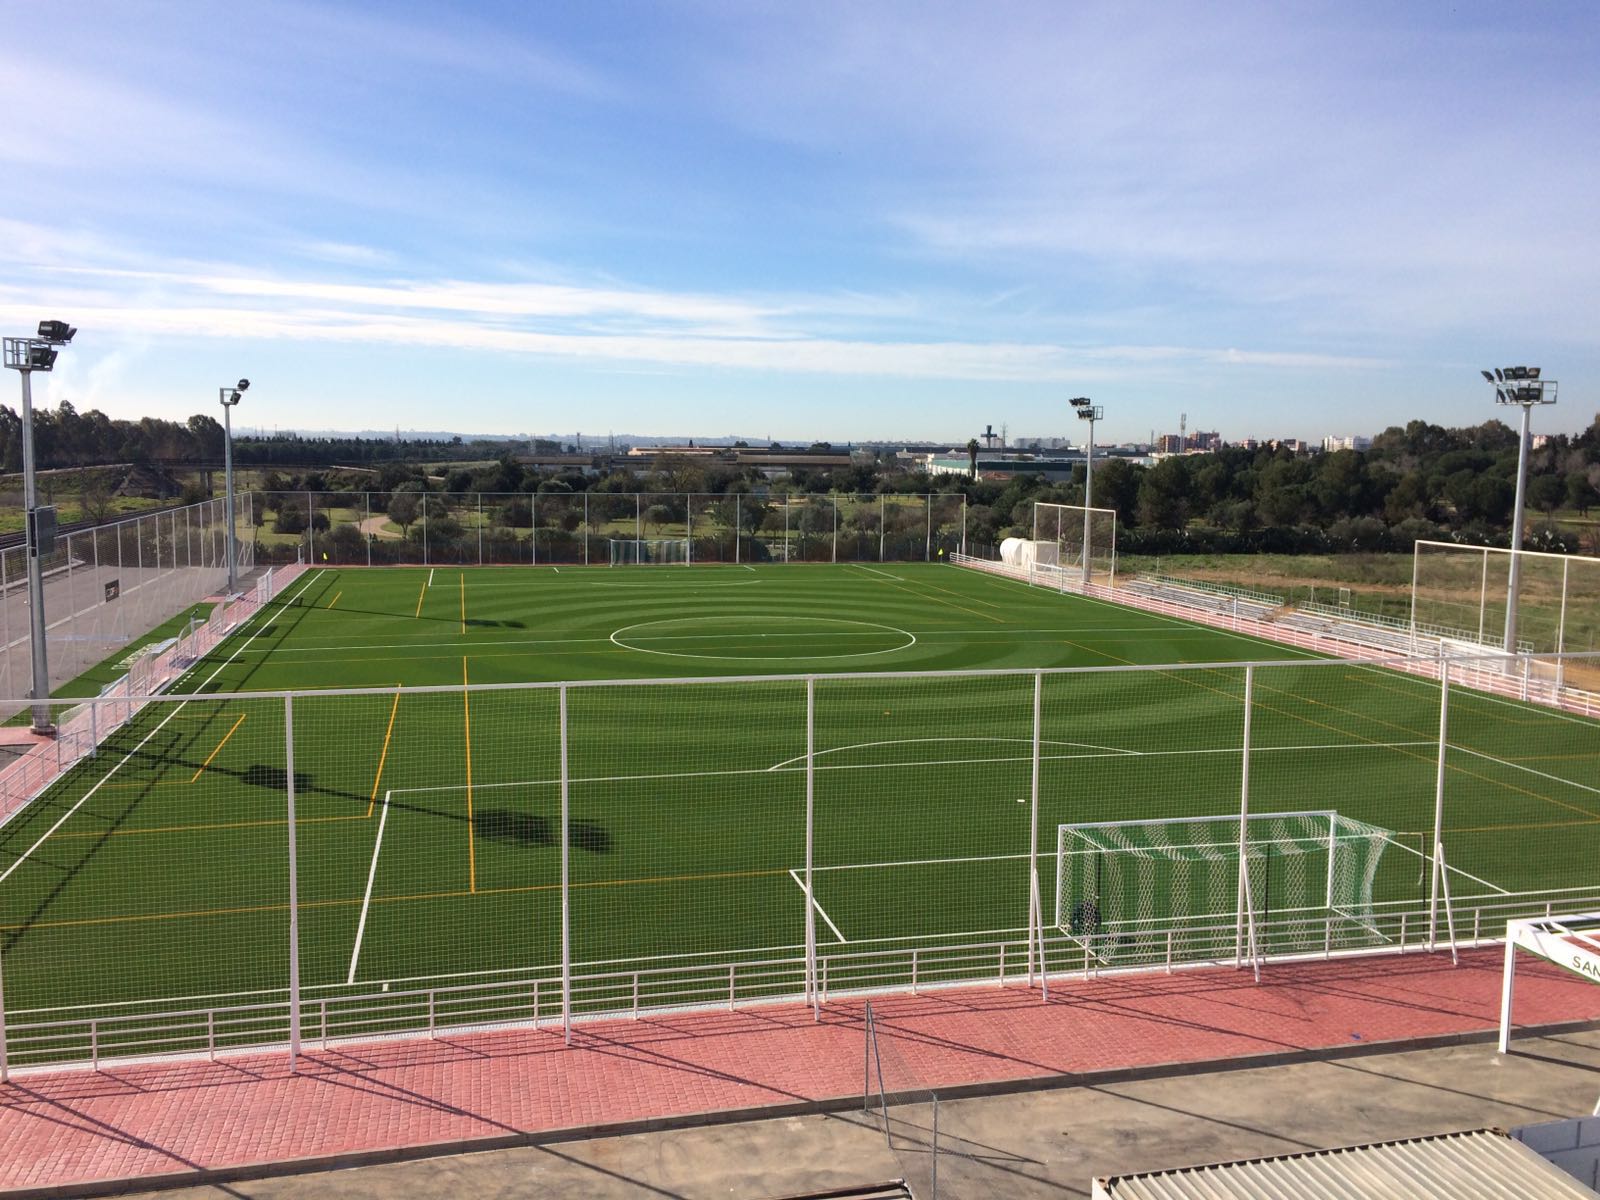 Campo de Fútbol en el C.D. Demetrio Pichel, Sevilla Image